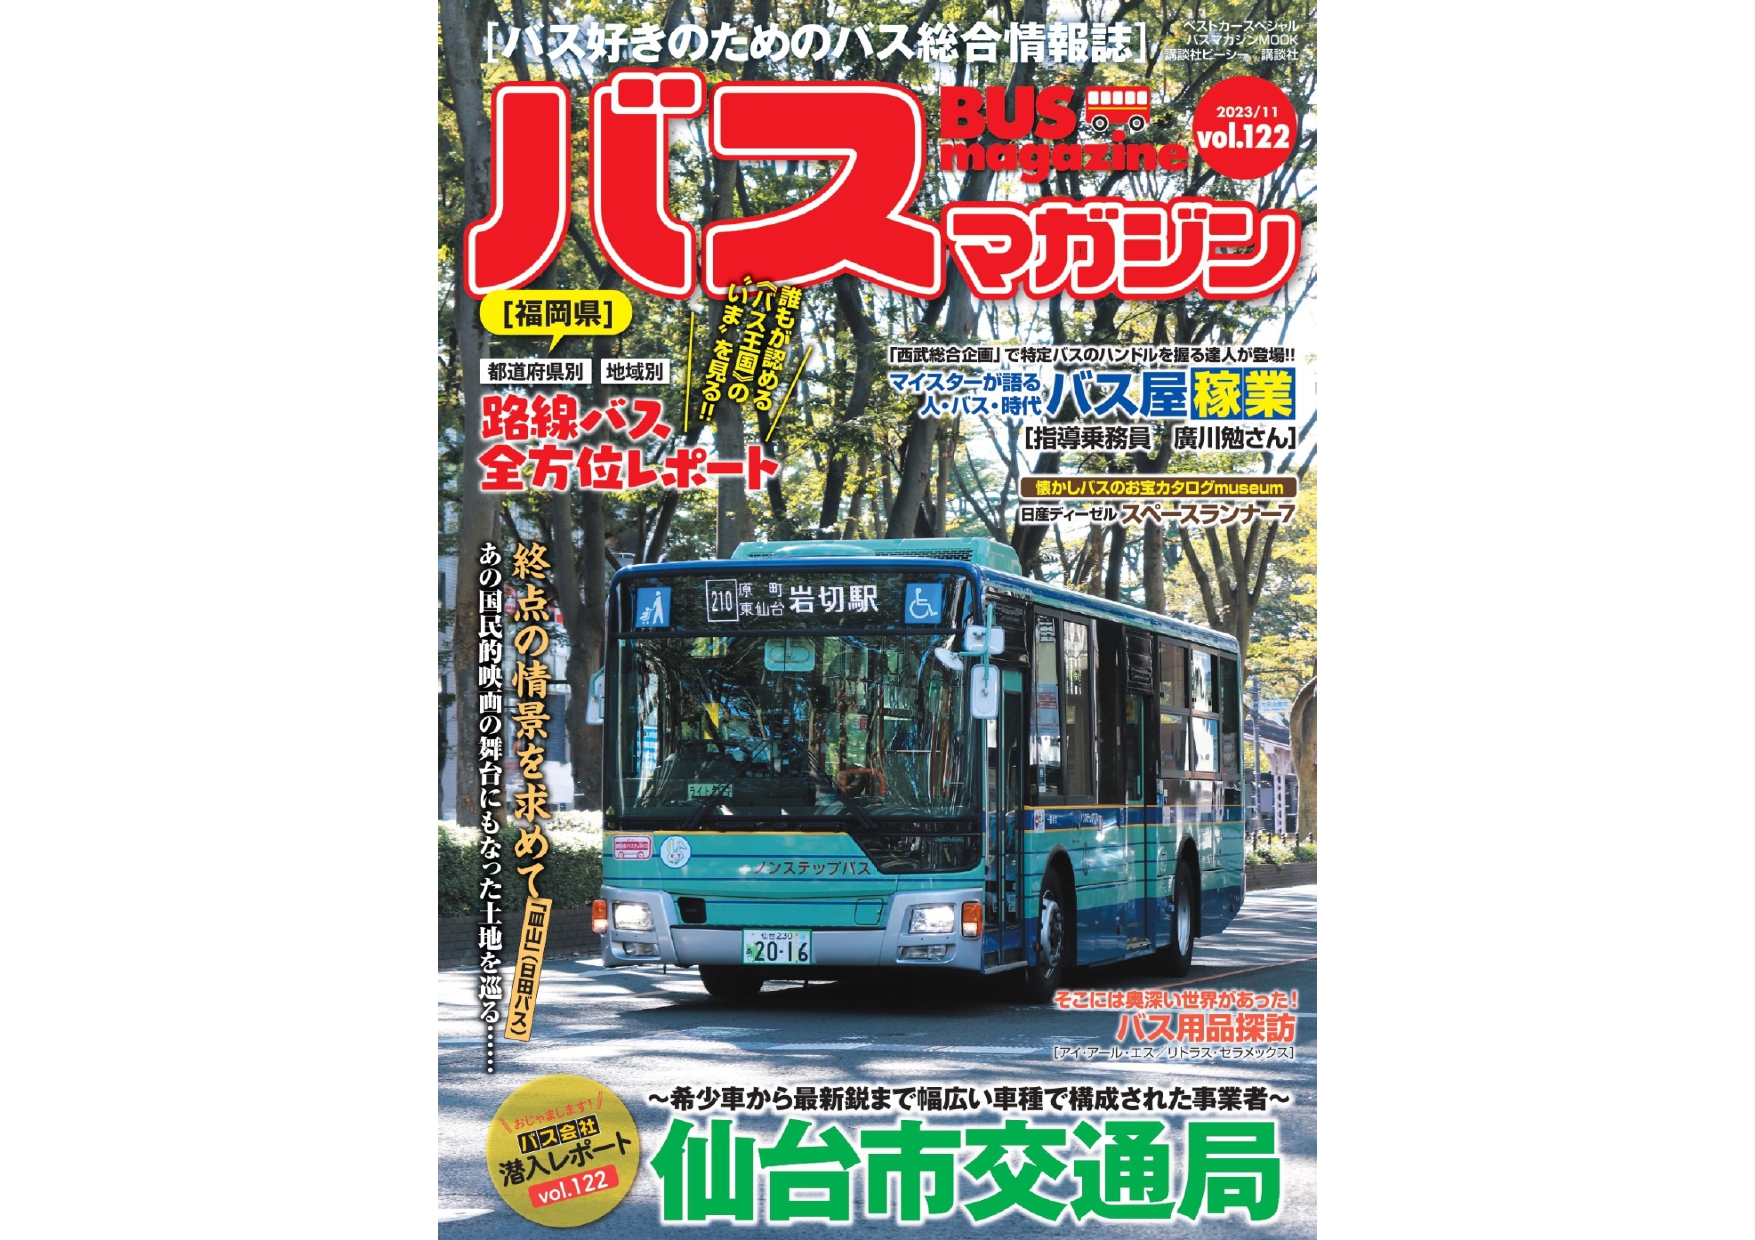 【11月27日発売】巻頭特集は「仙台市交通局」!! ほか楽しいバスの 